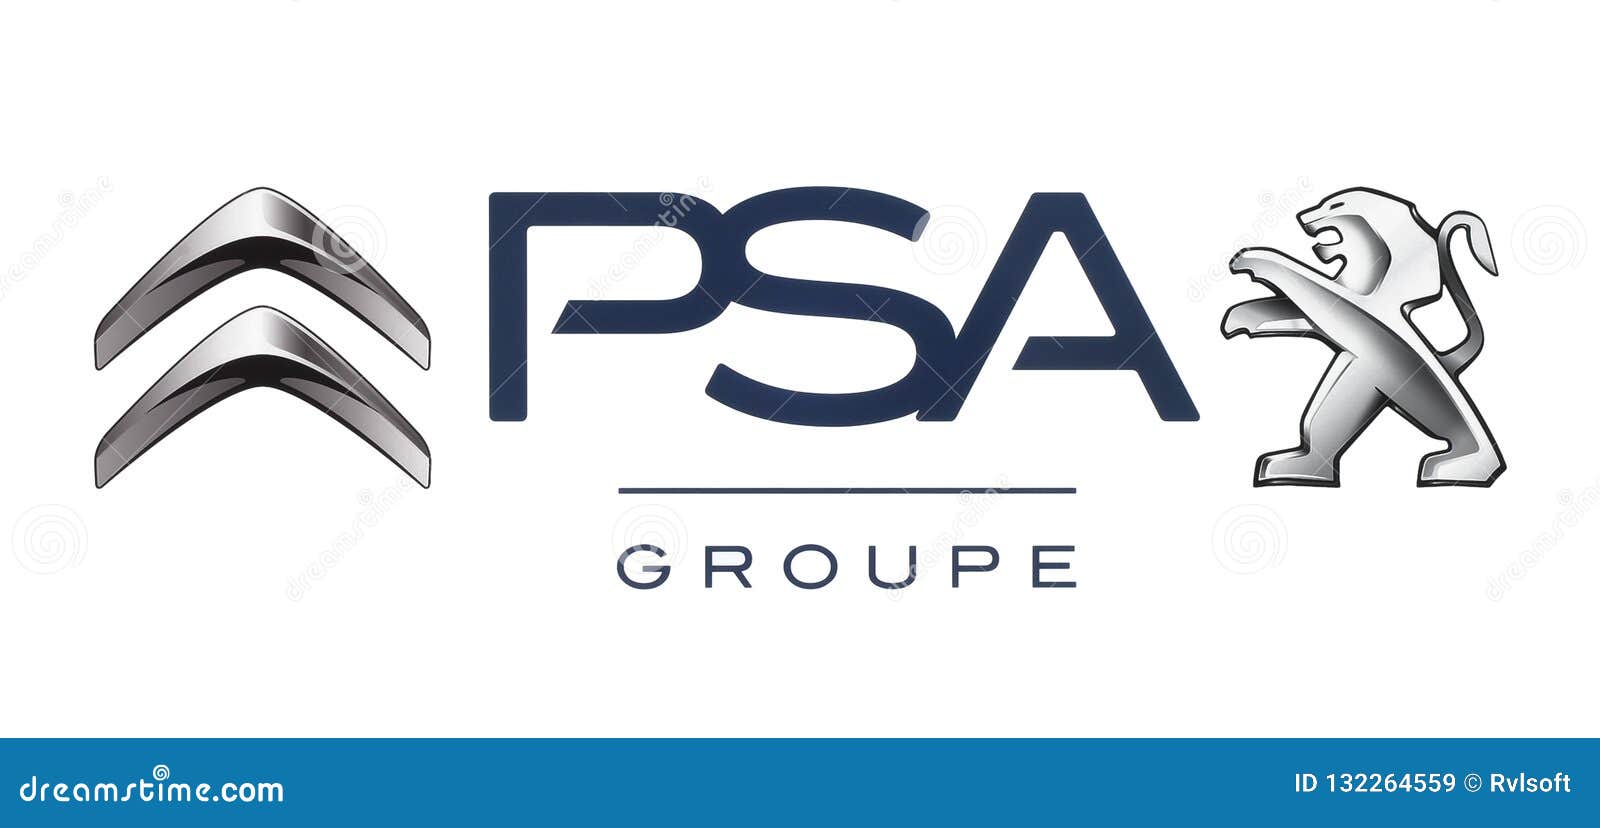 Logos D'alliance De Fabricants De Voiture : Citroen Et Peugeot